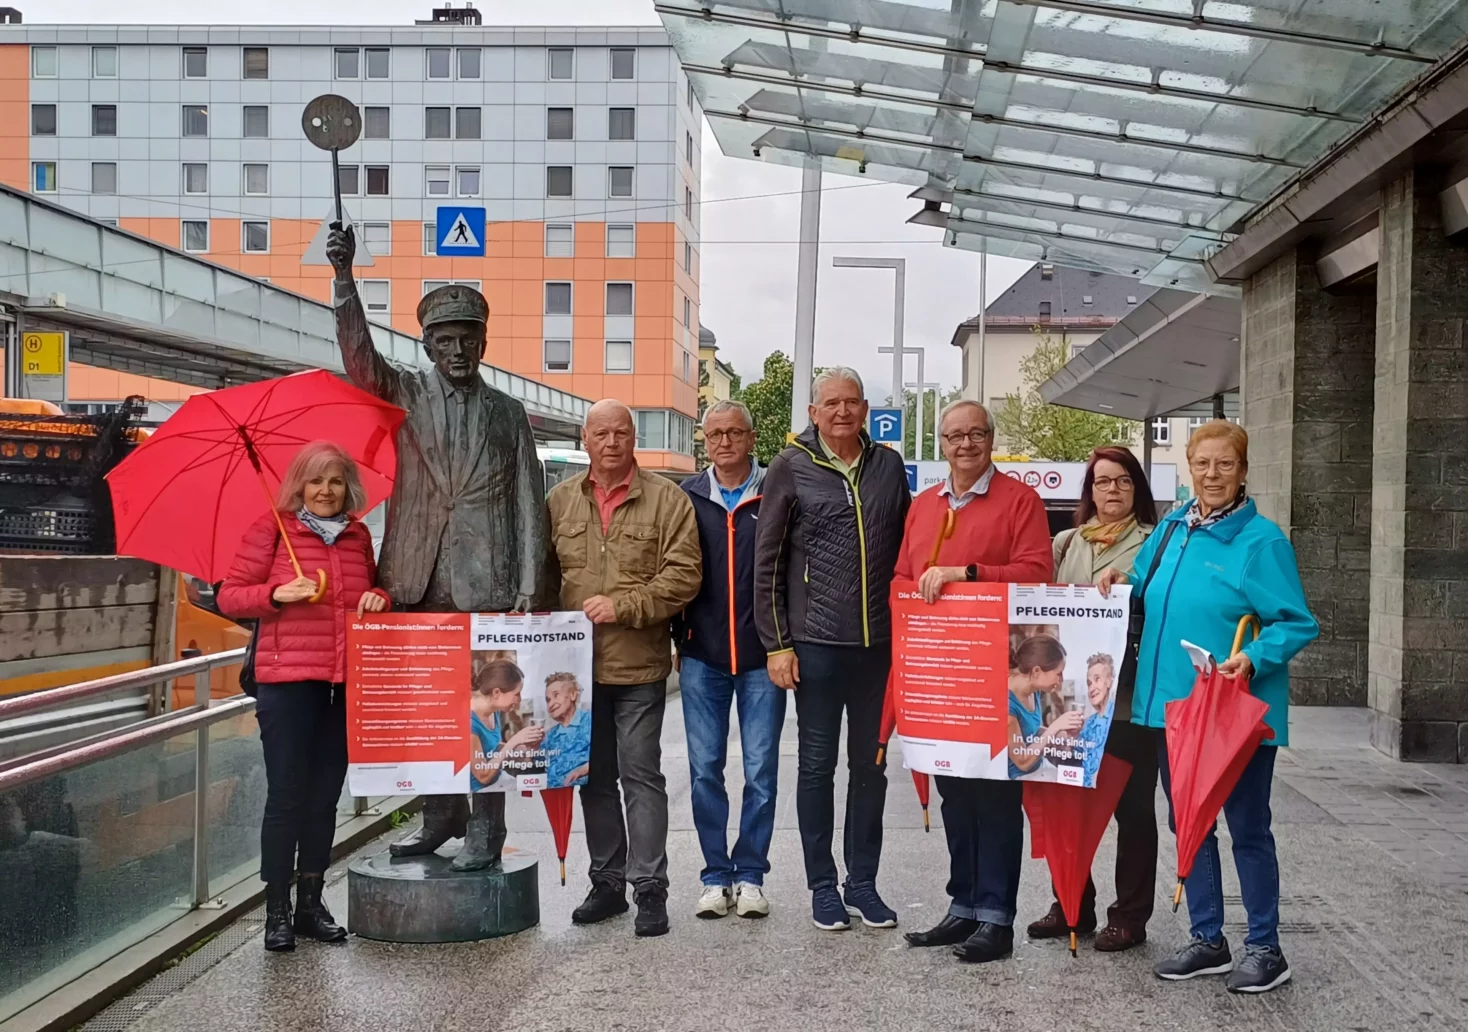 Foto in Beitrag von 5min.at: Zu sehen die Villacher Senioren vor dem Hauptbahnhof.